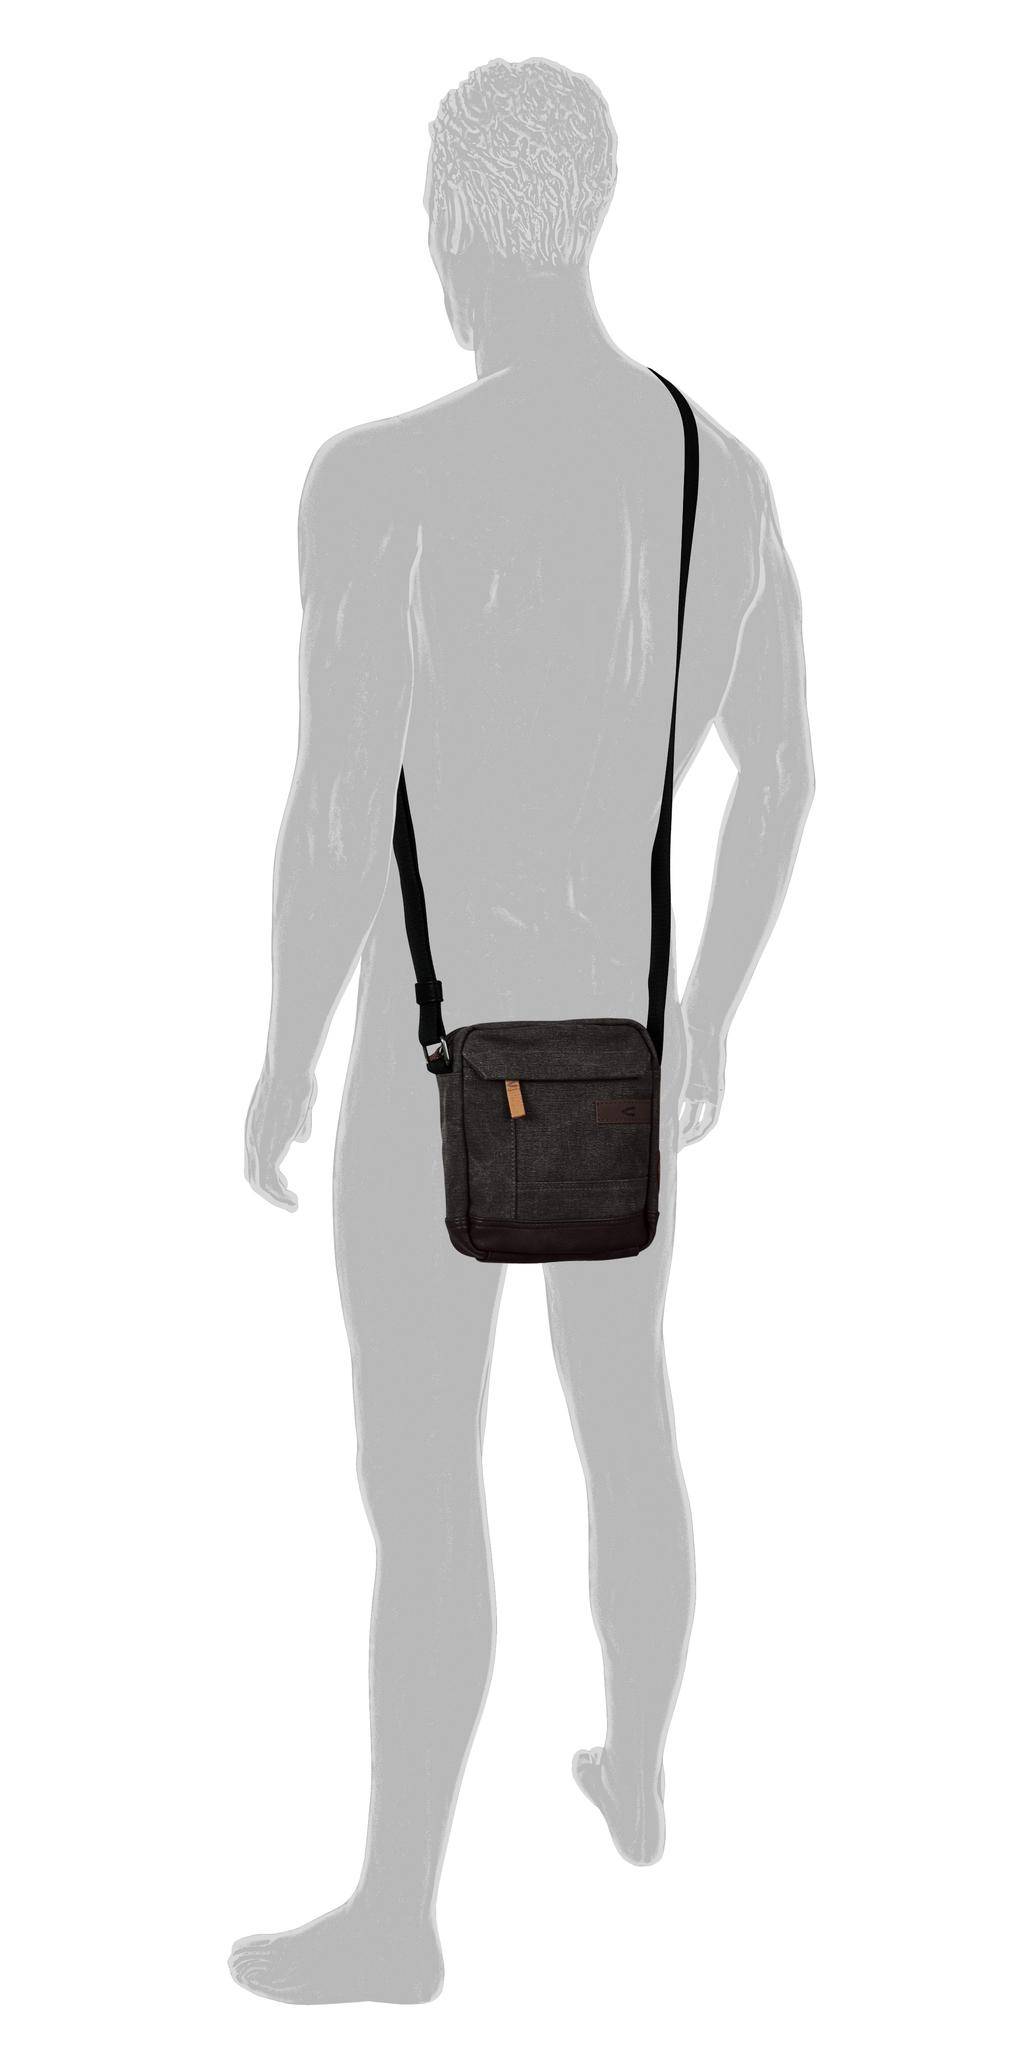 Мужская сумка Camel Active, серая, цвет серый, размер ONE SIZE - фото 4